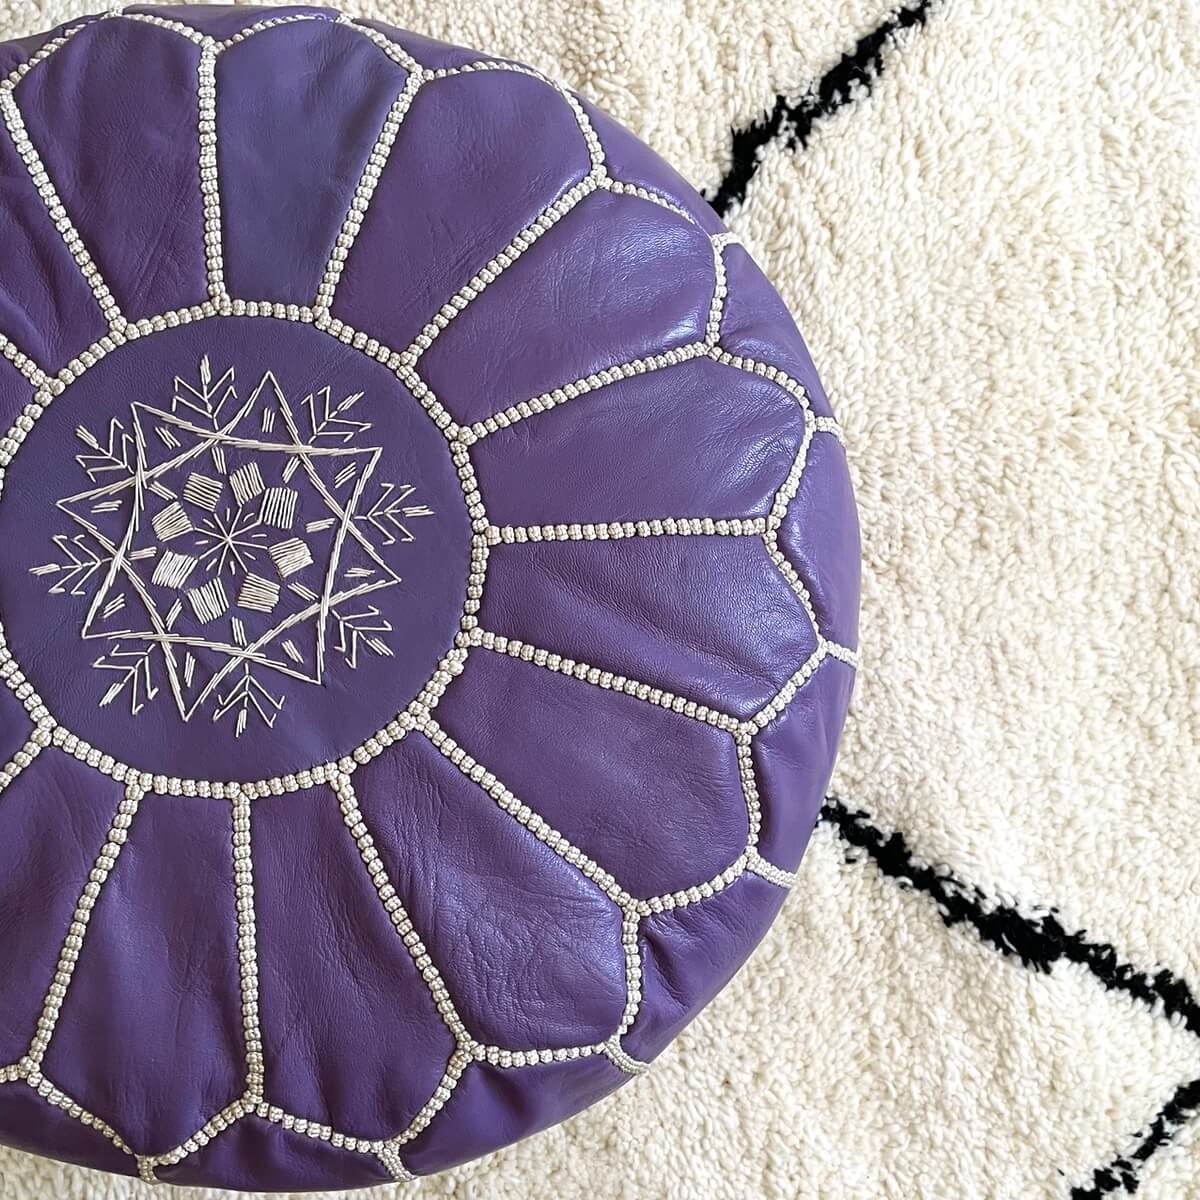 taburet puf marocan pentru fotoliu realizat manual din piele naturala culoare mov lila